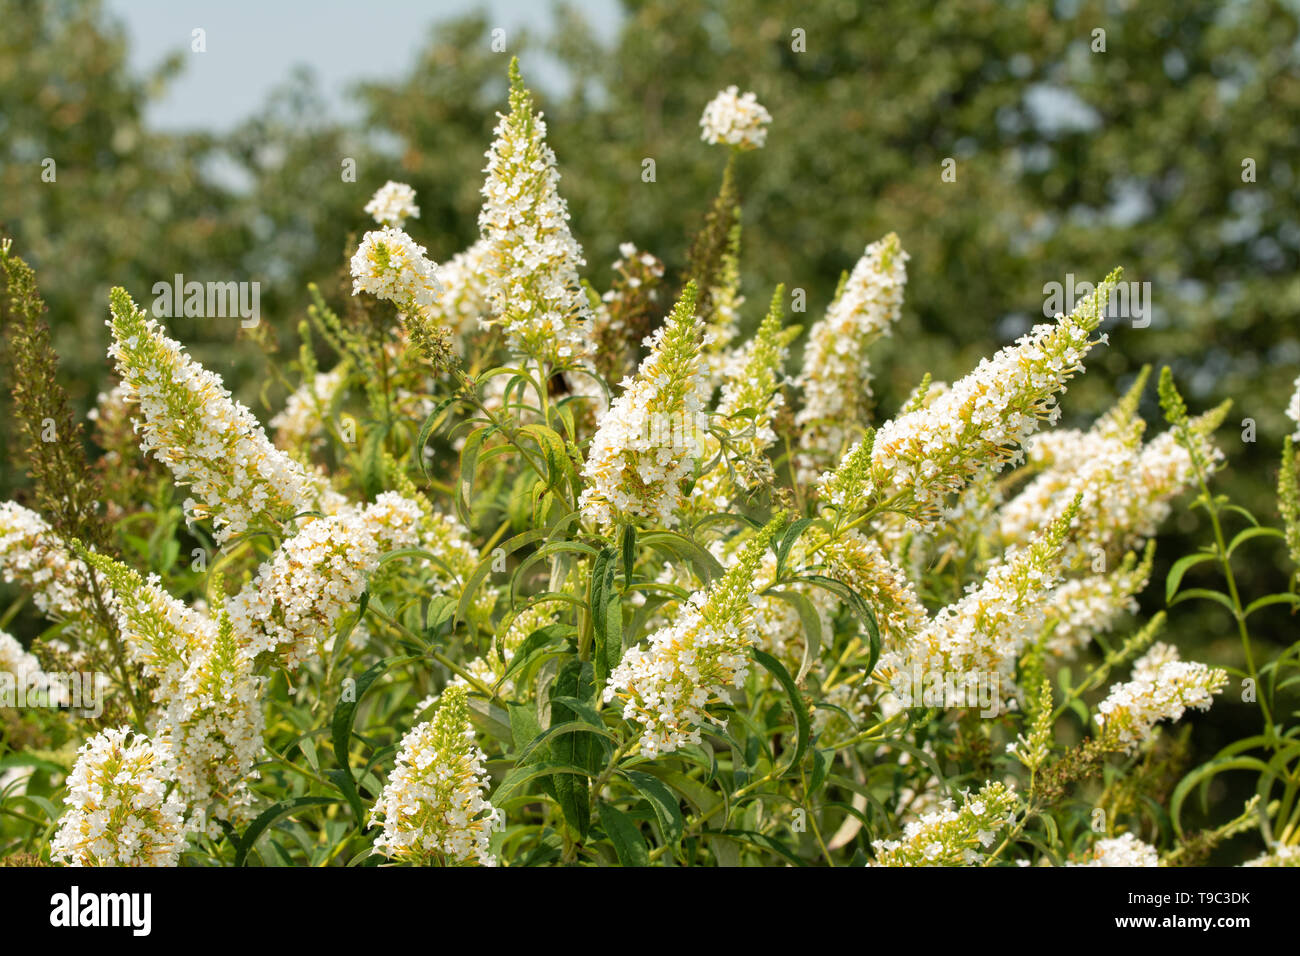 Butterfly bush, Buddleia davidii, full of white flower clusters in summer garden Stock Photo